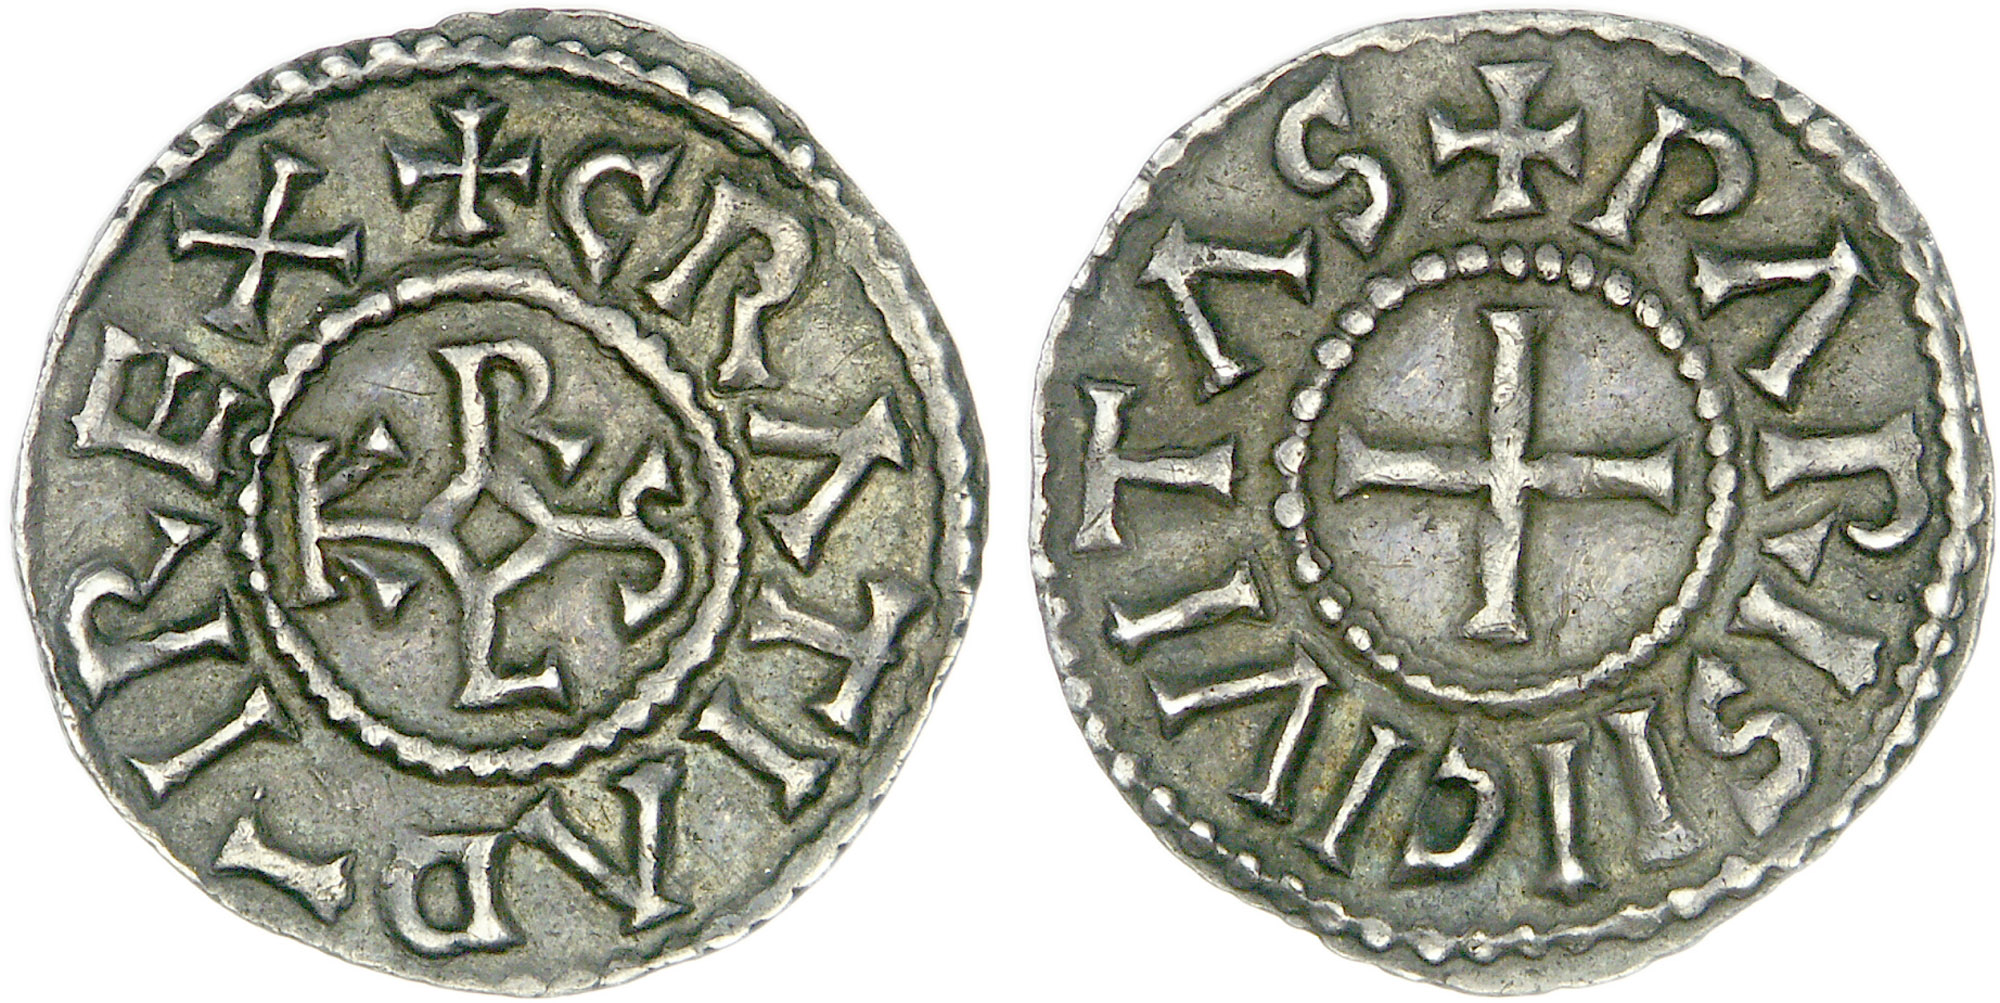 Münze, die dem westfränkischen König Karl II. dem Kahlen (843-877) zugeschrieben wird